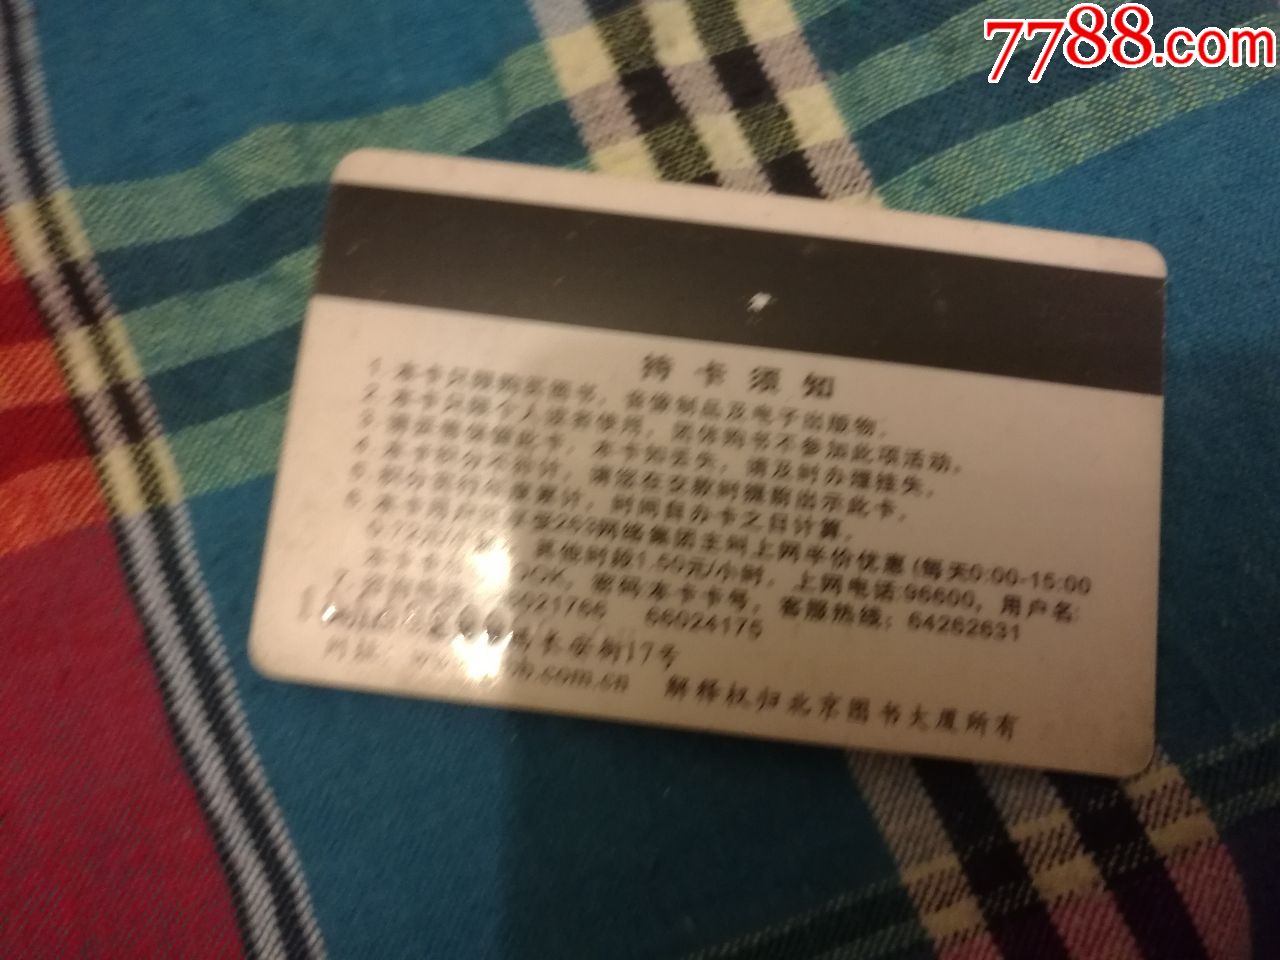 北京图书大厦书友卡积分卡